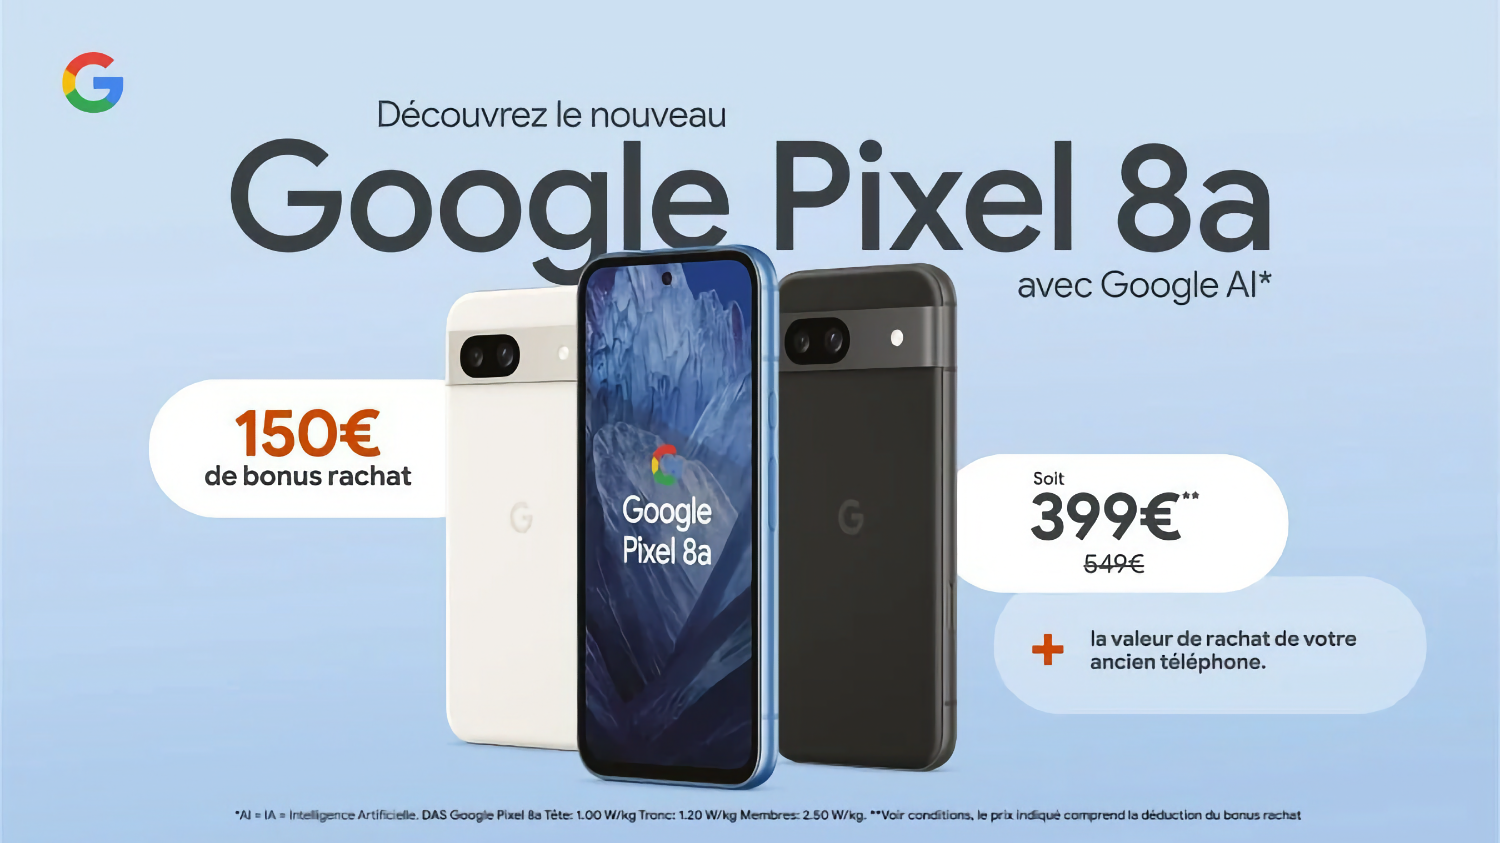 Характеристики и цена недорогого Google Pixel 8a утекли в сеть за неделю до анонса